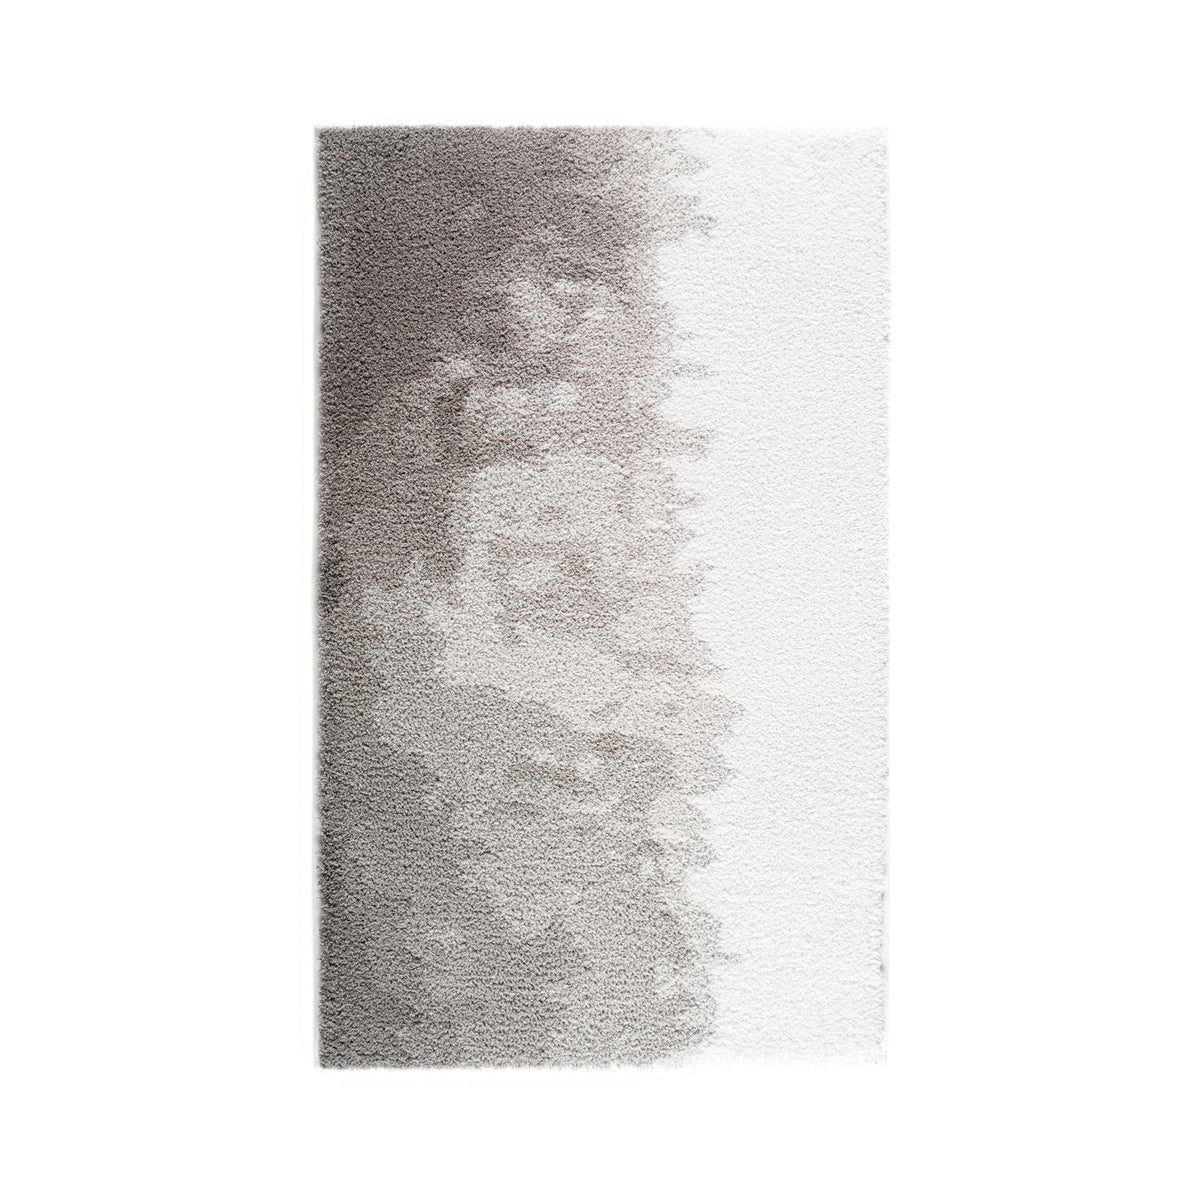 Silo Image of Graccioza Sand Bath Rugs in Color Grey